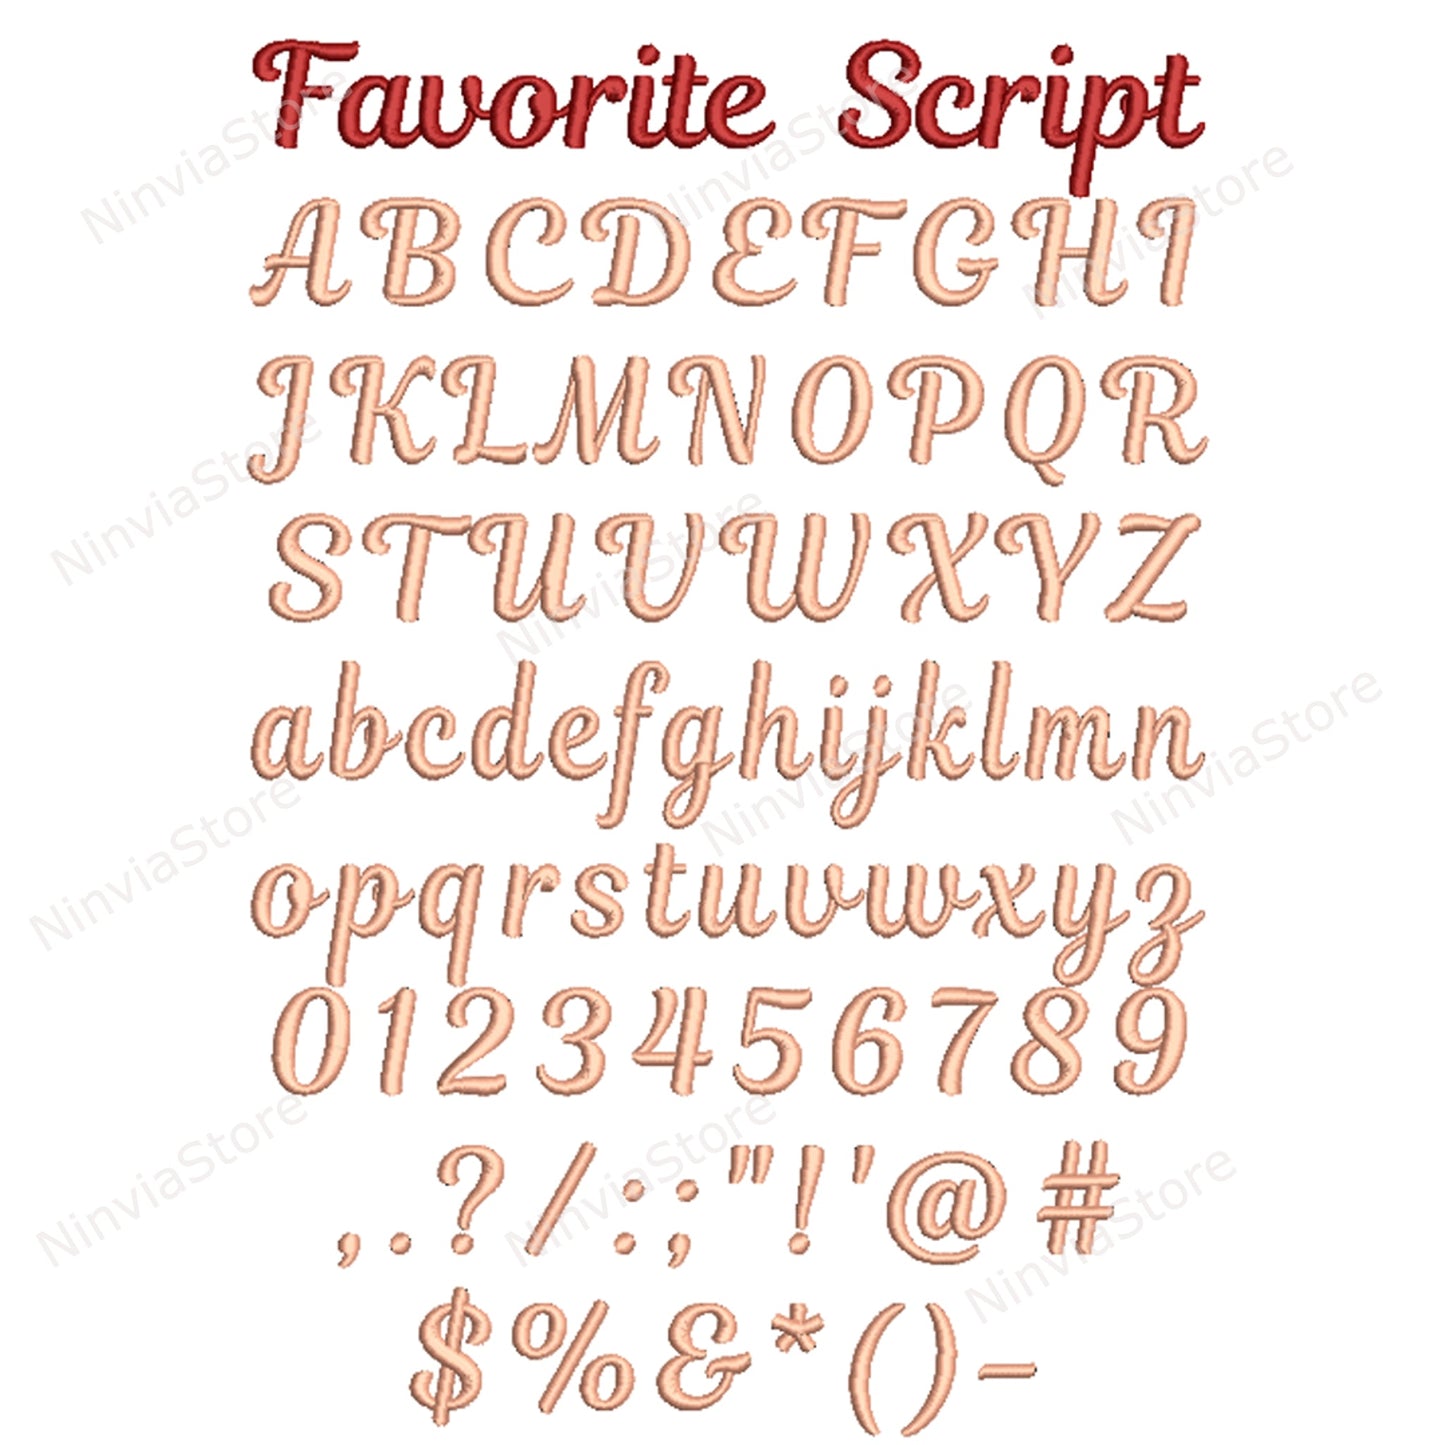 10 DST-Stickschriftarten-Paket, Maschinenstickschrift DST, Alphabet-Stickdesign, kursive DST-Schriftart für Stickereien, Kalligraphie-Monogramm-Stickschriftart DST